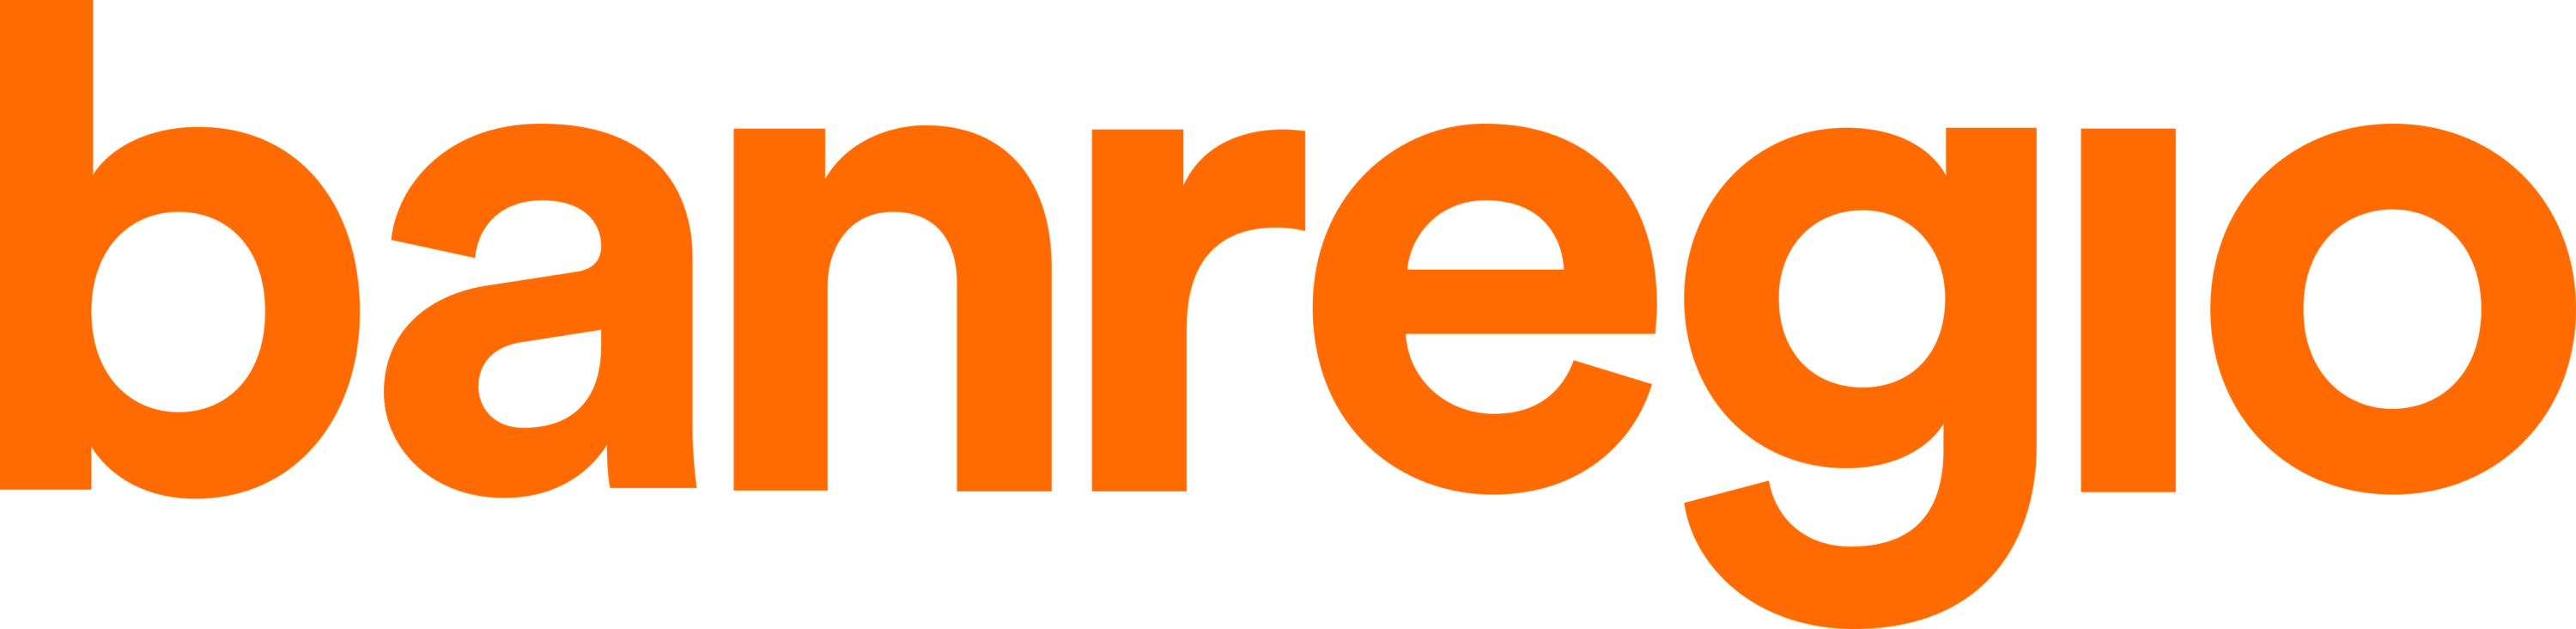 Banregio Logo